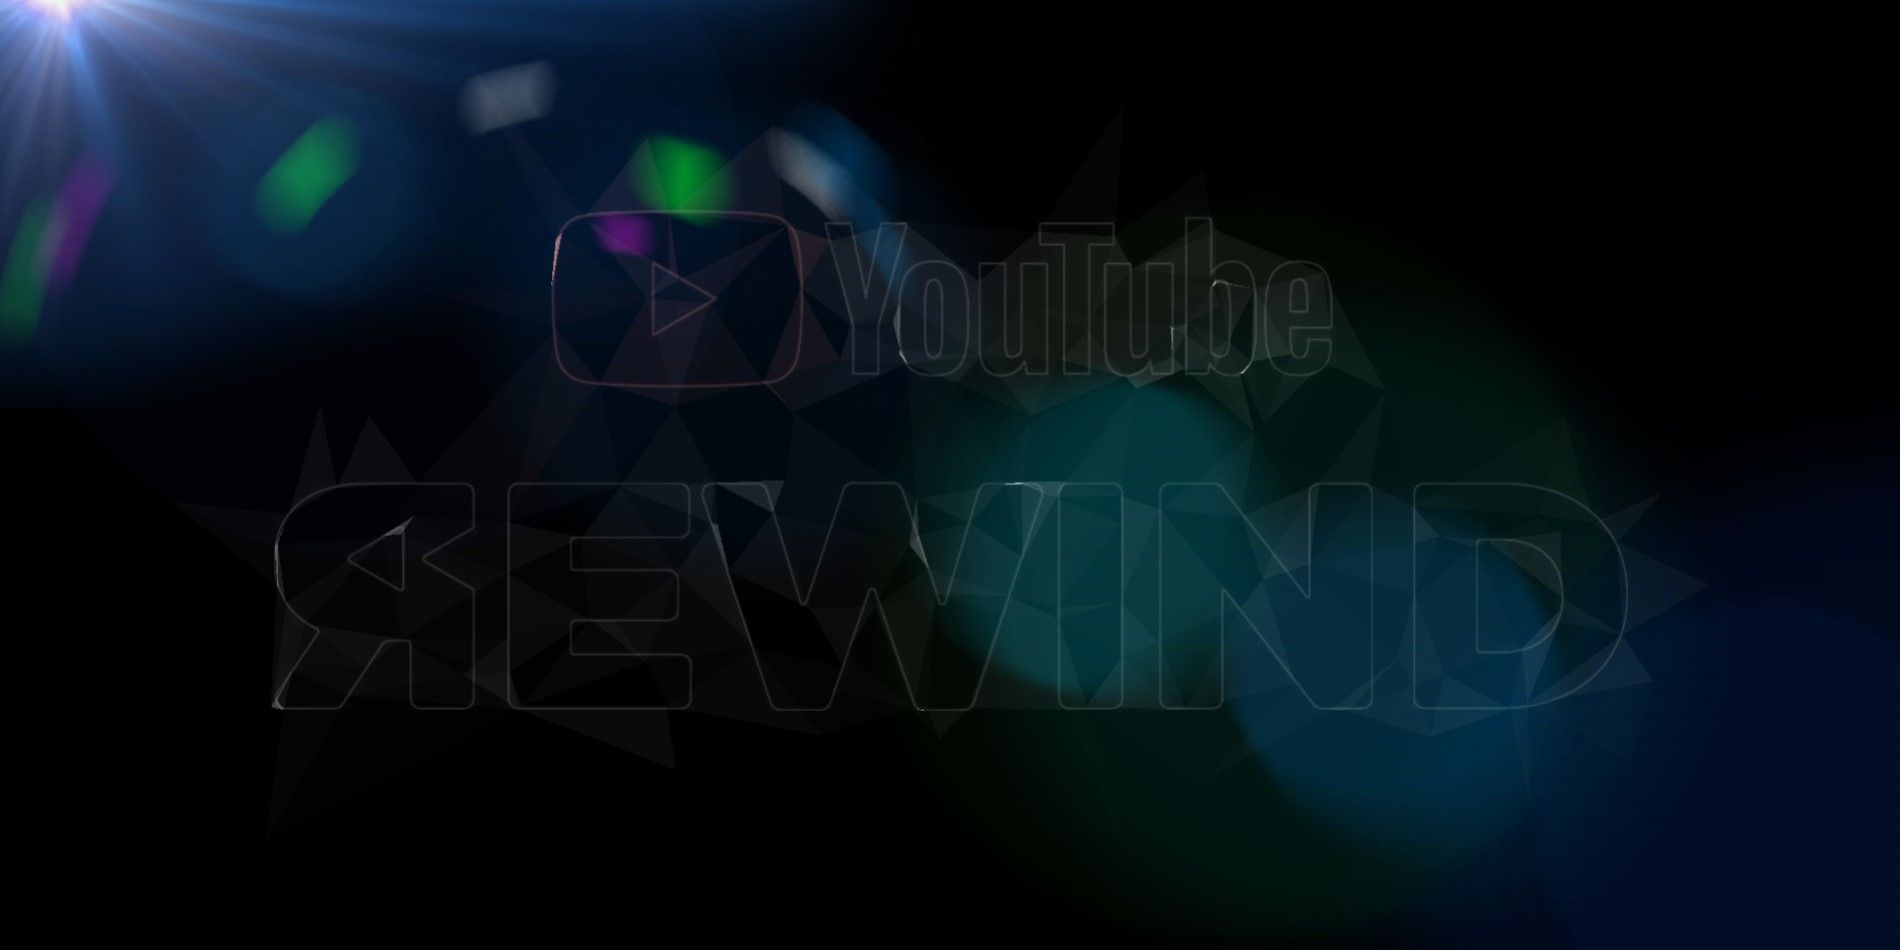 YouTube Rewind Is Dead